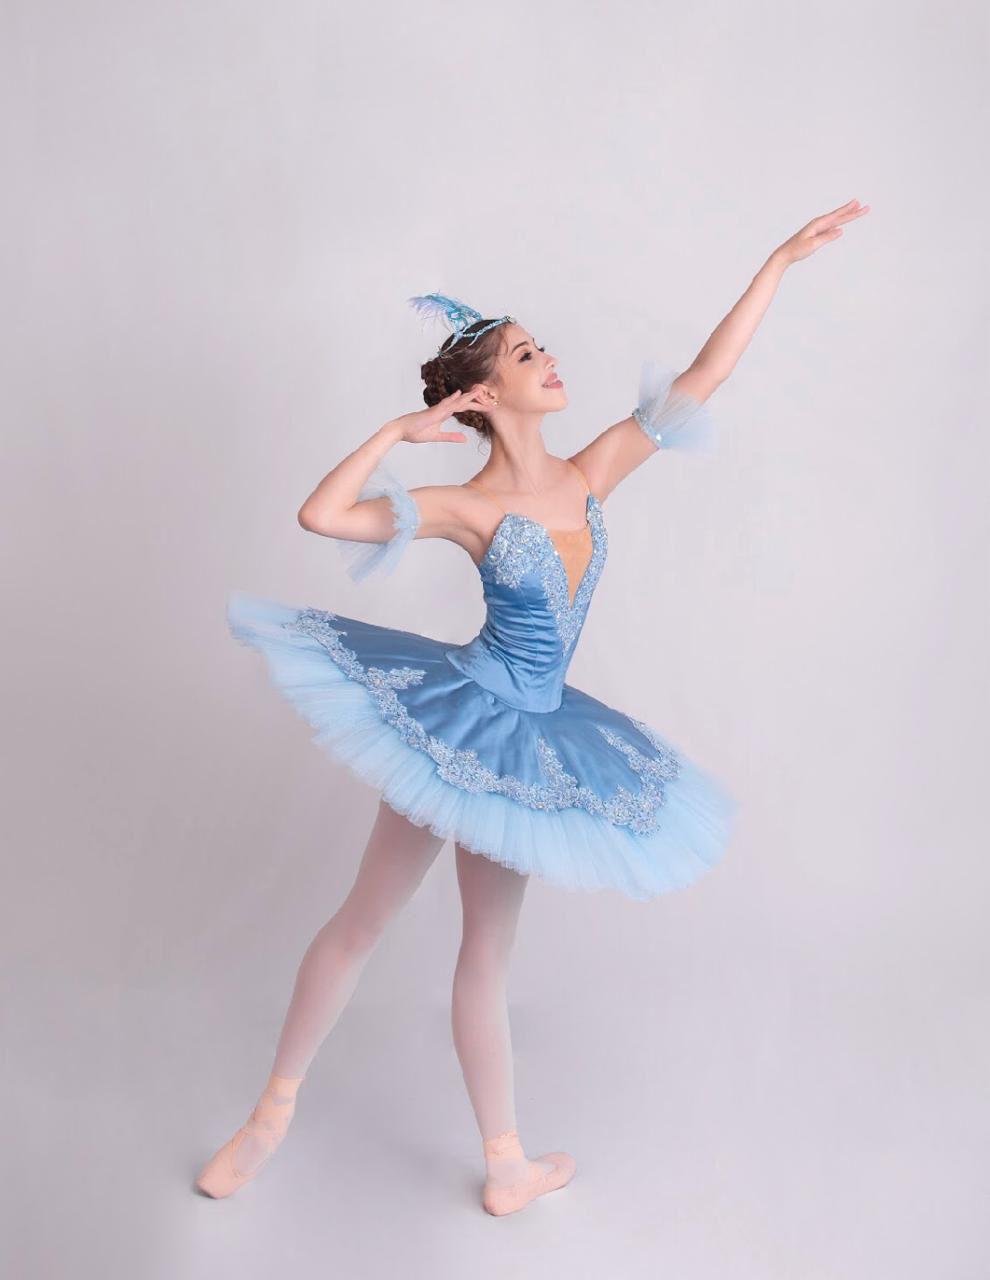 $!Mariana Cháidez García es originaria de Navolato. En la imagen interpreta a la princesa Florine del ballet “La Bella Durmiente”.